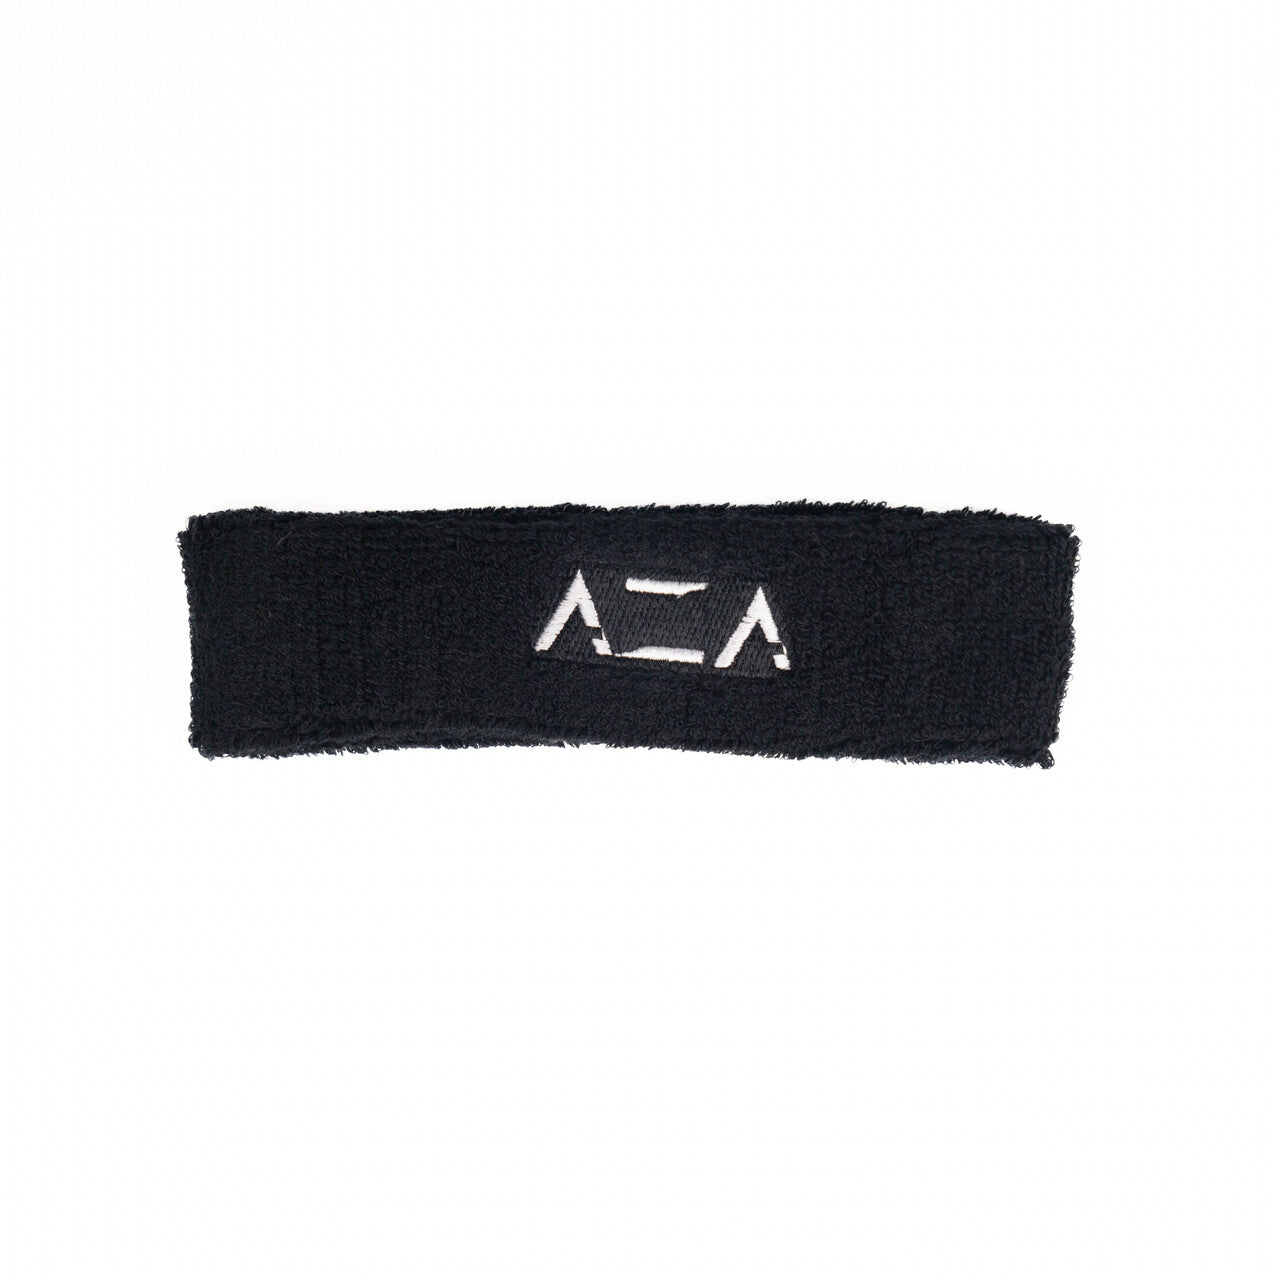 AZA Basic Headband - Black